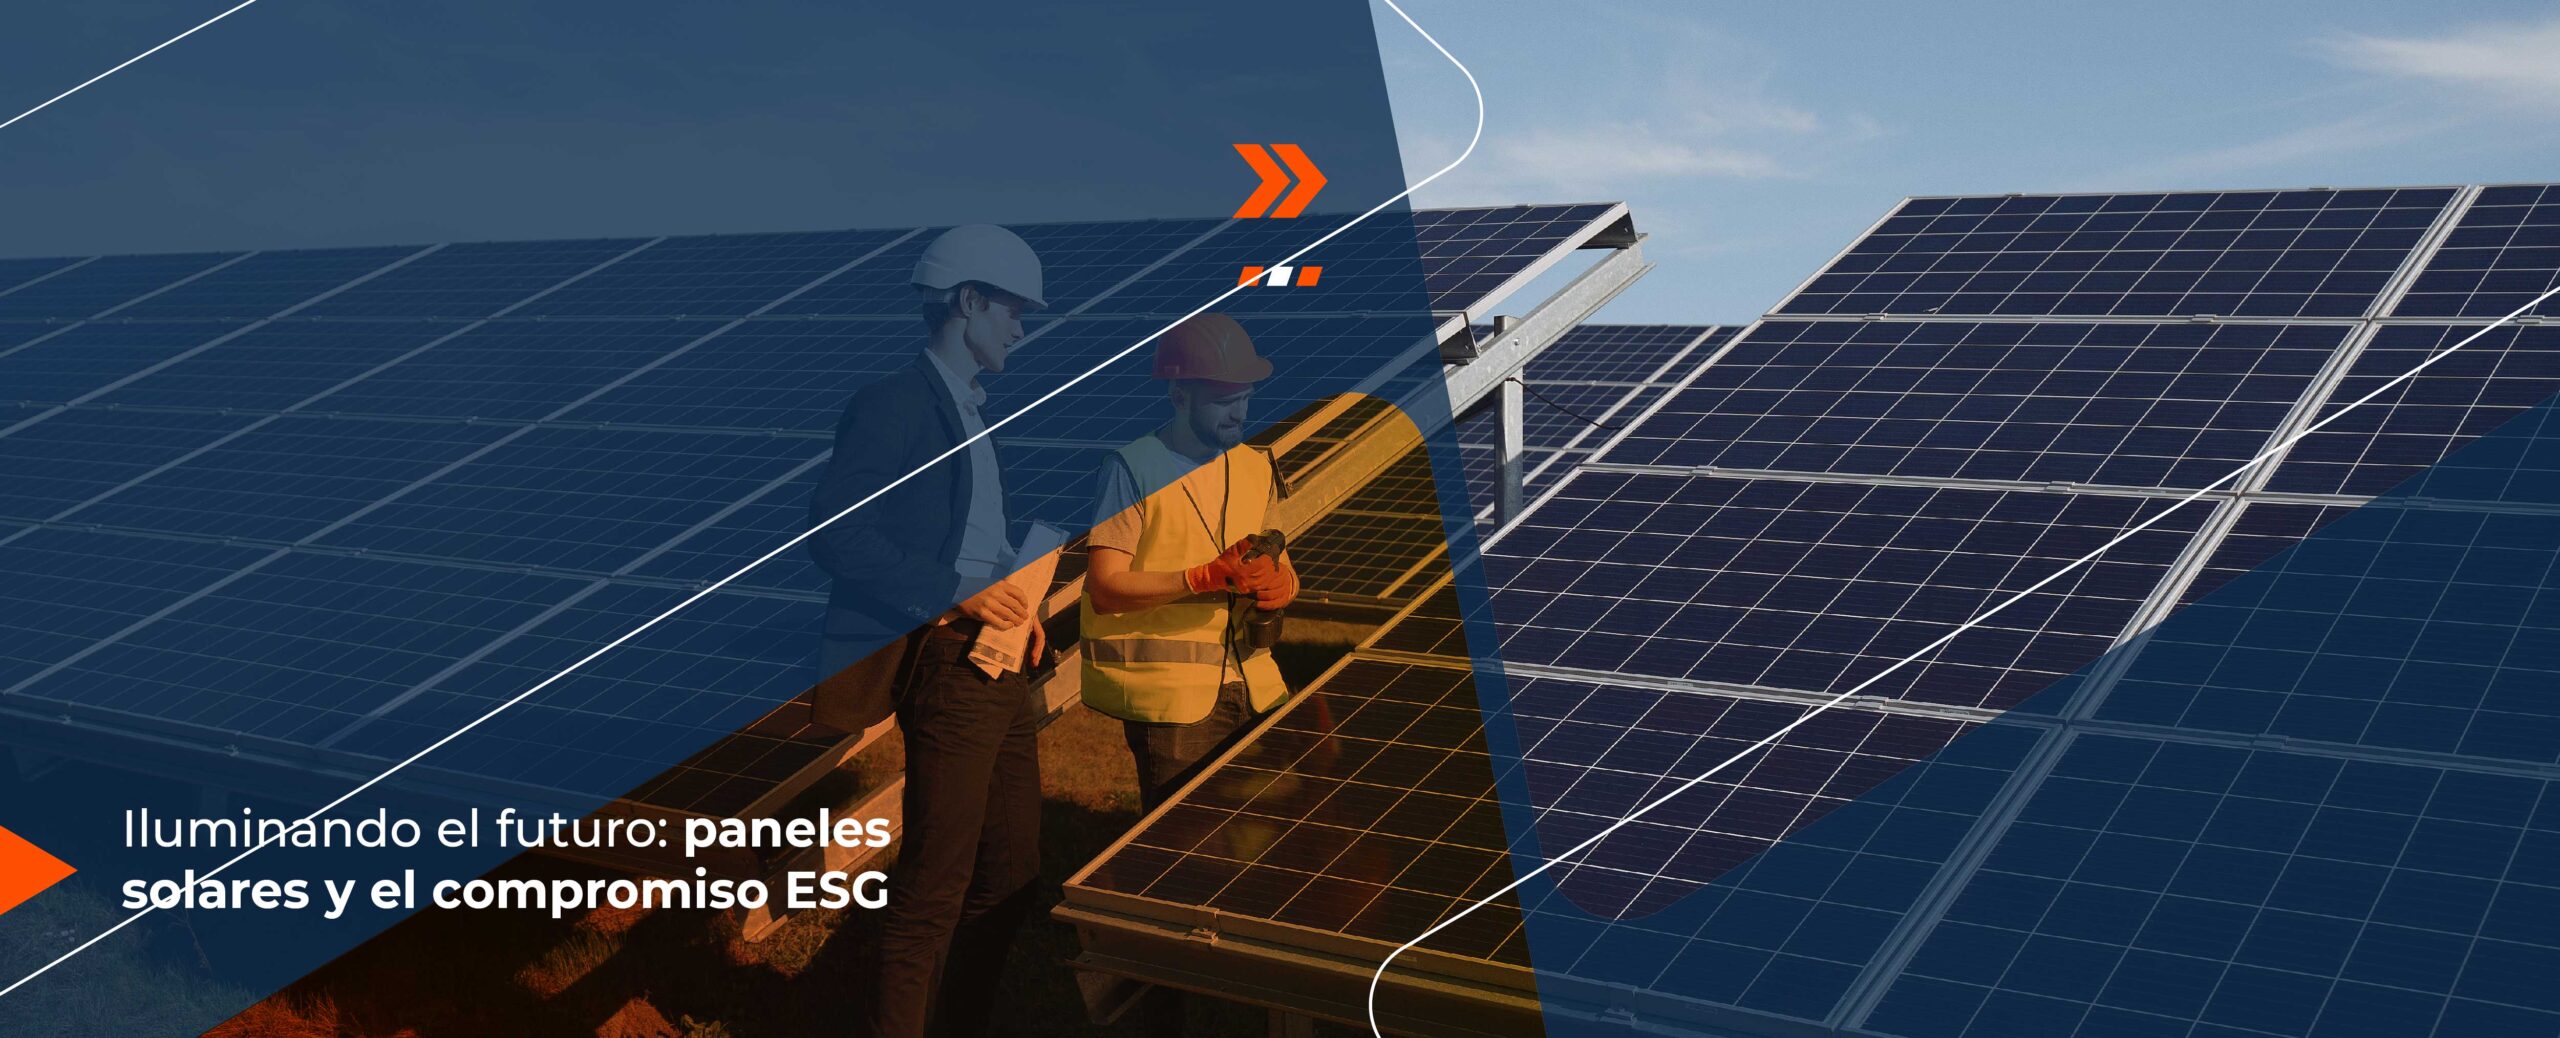 Iluminando el futuro: paneles solares y el compromiso ESG